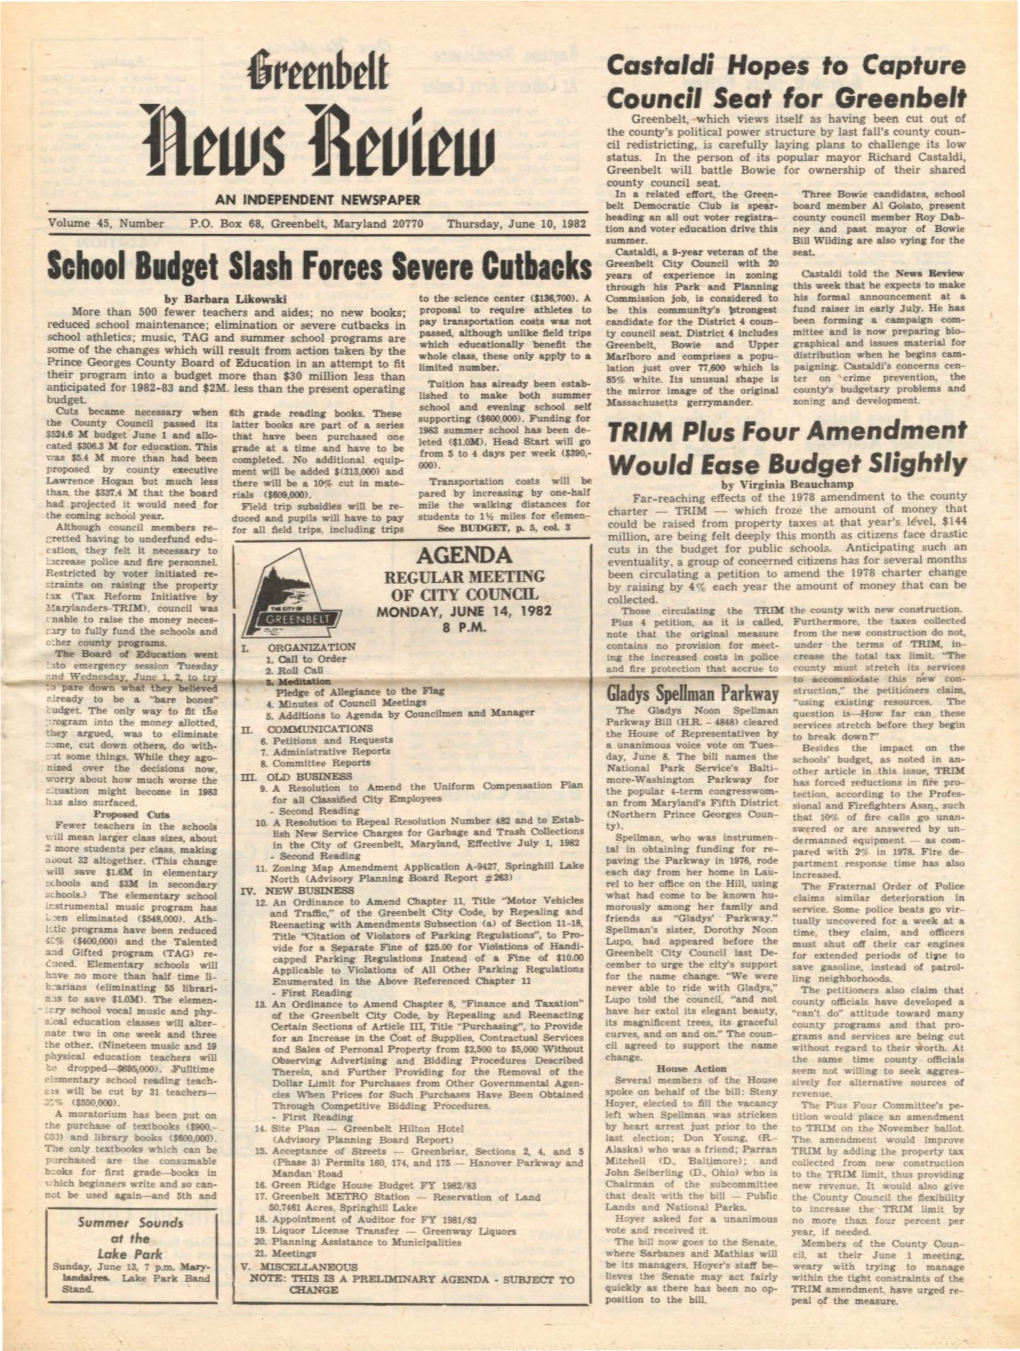 10 June 1982 Greenbelt News Review